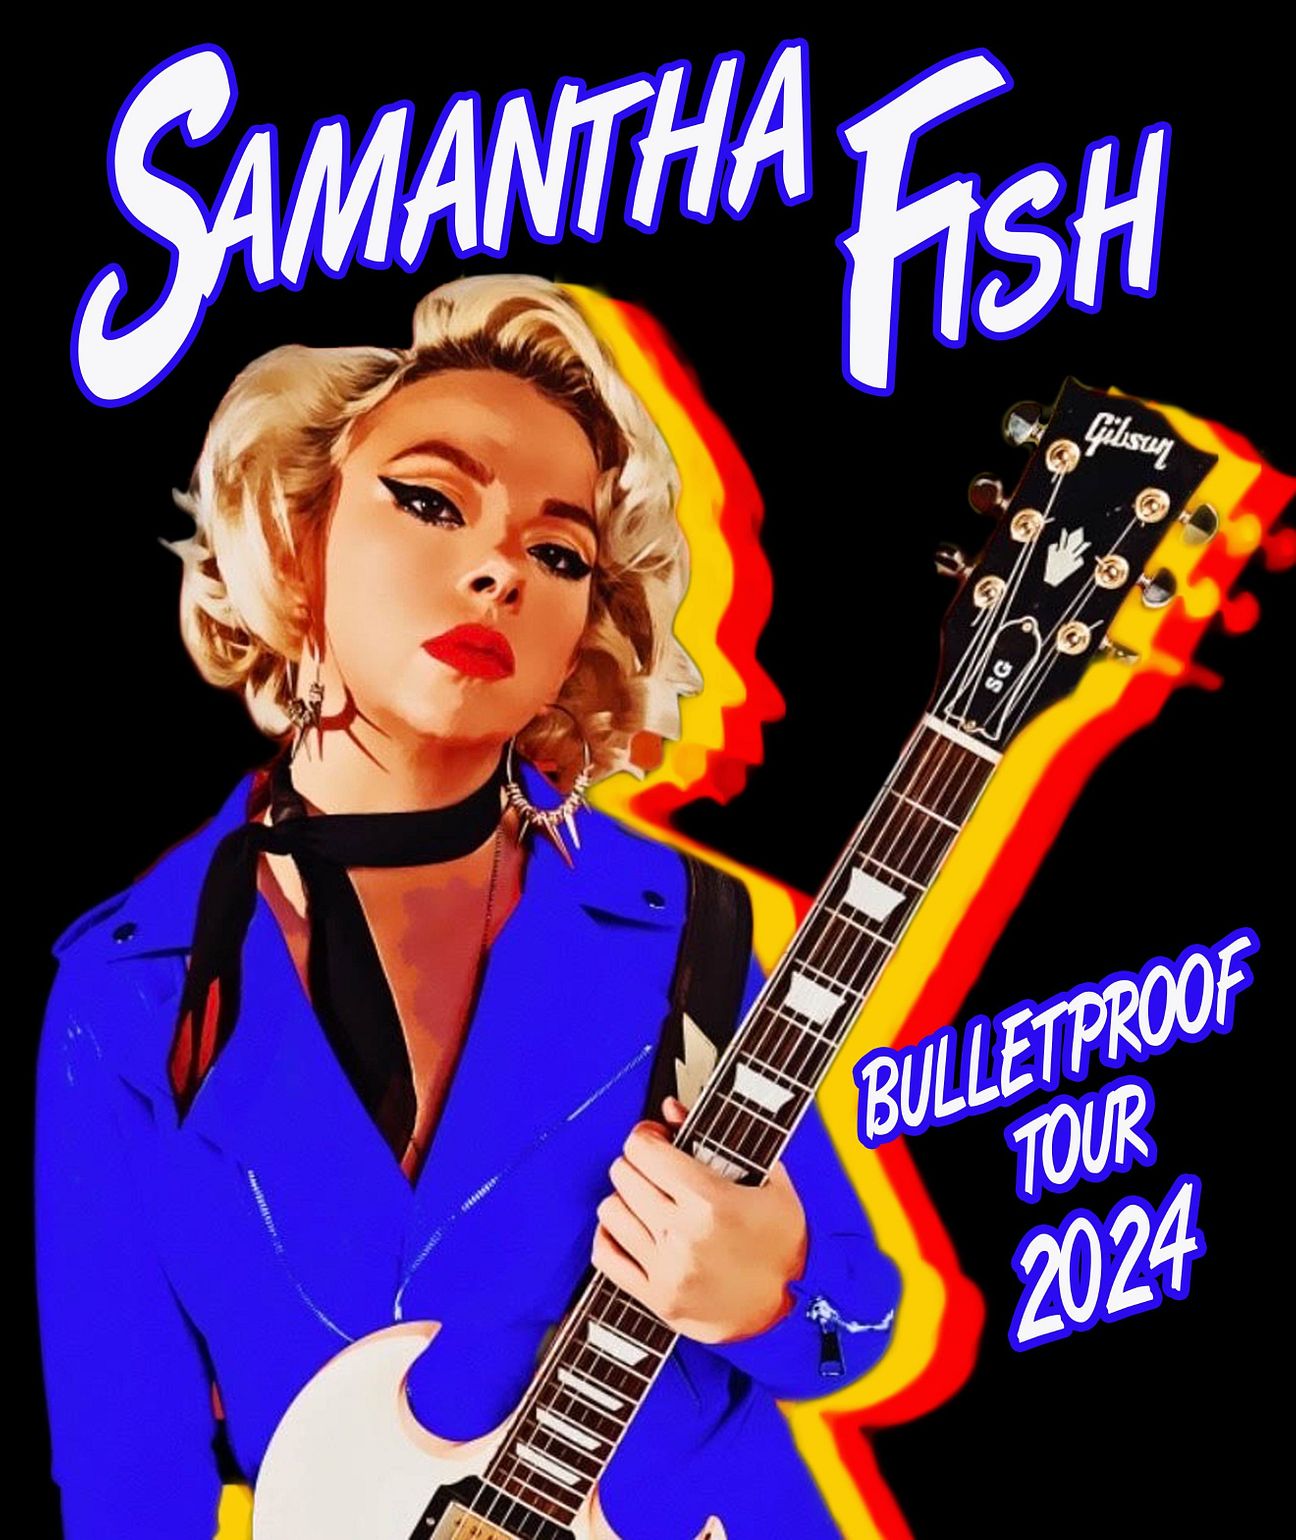 samantha fish tour 2024